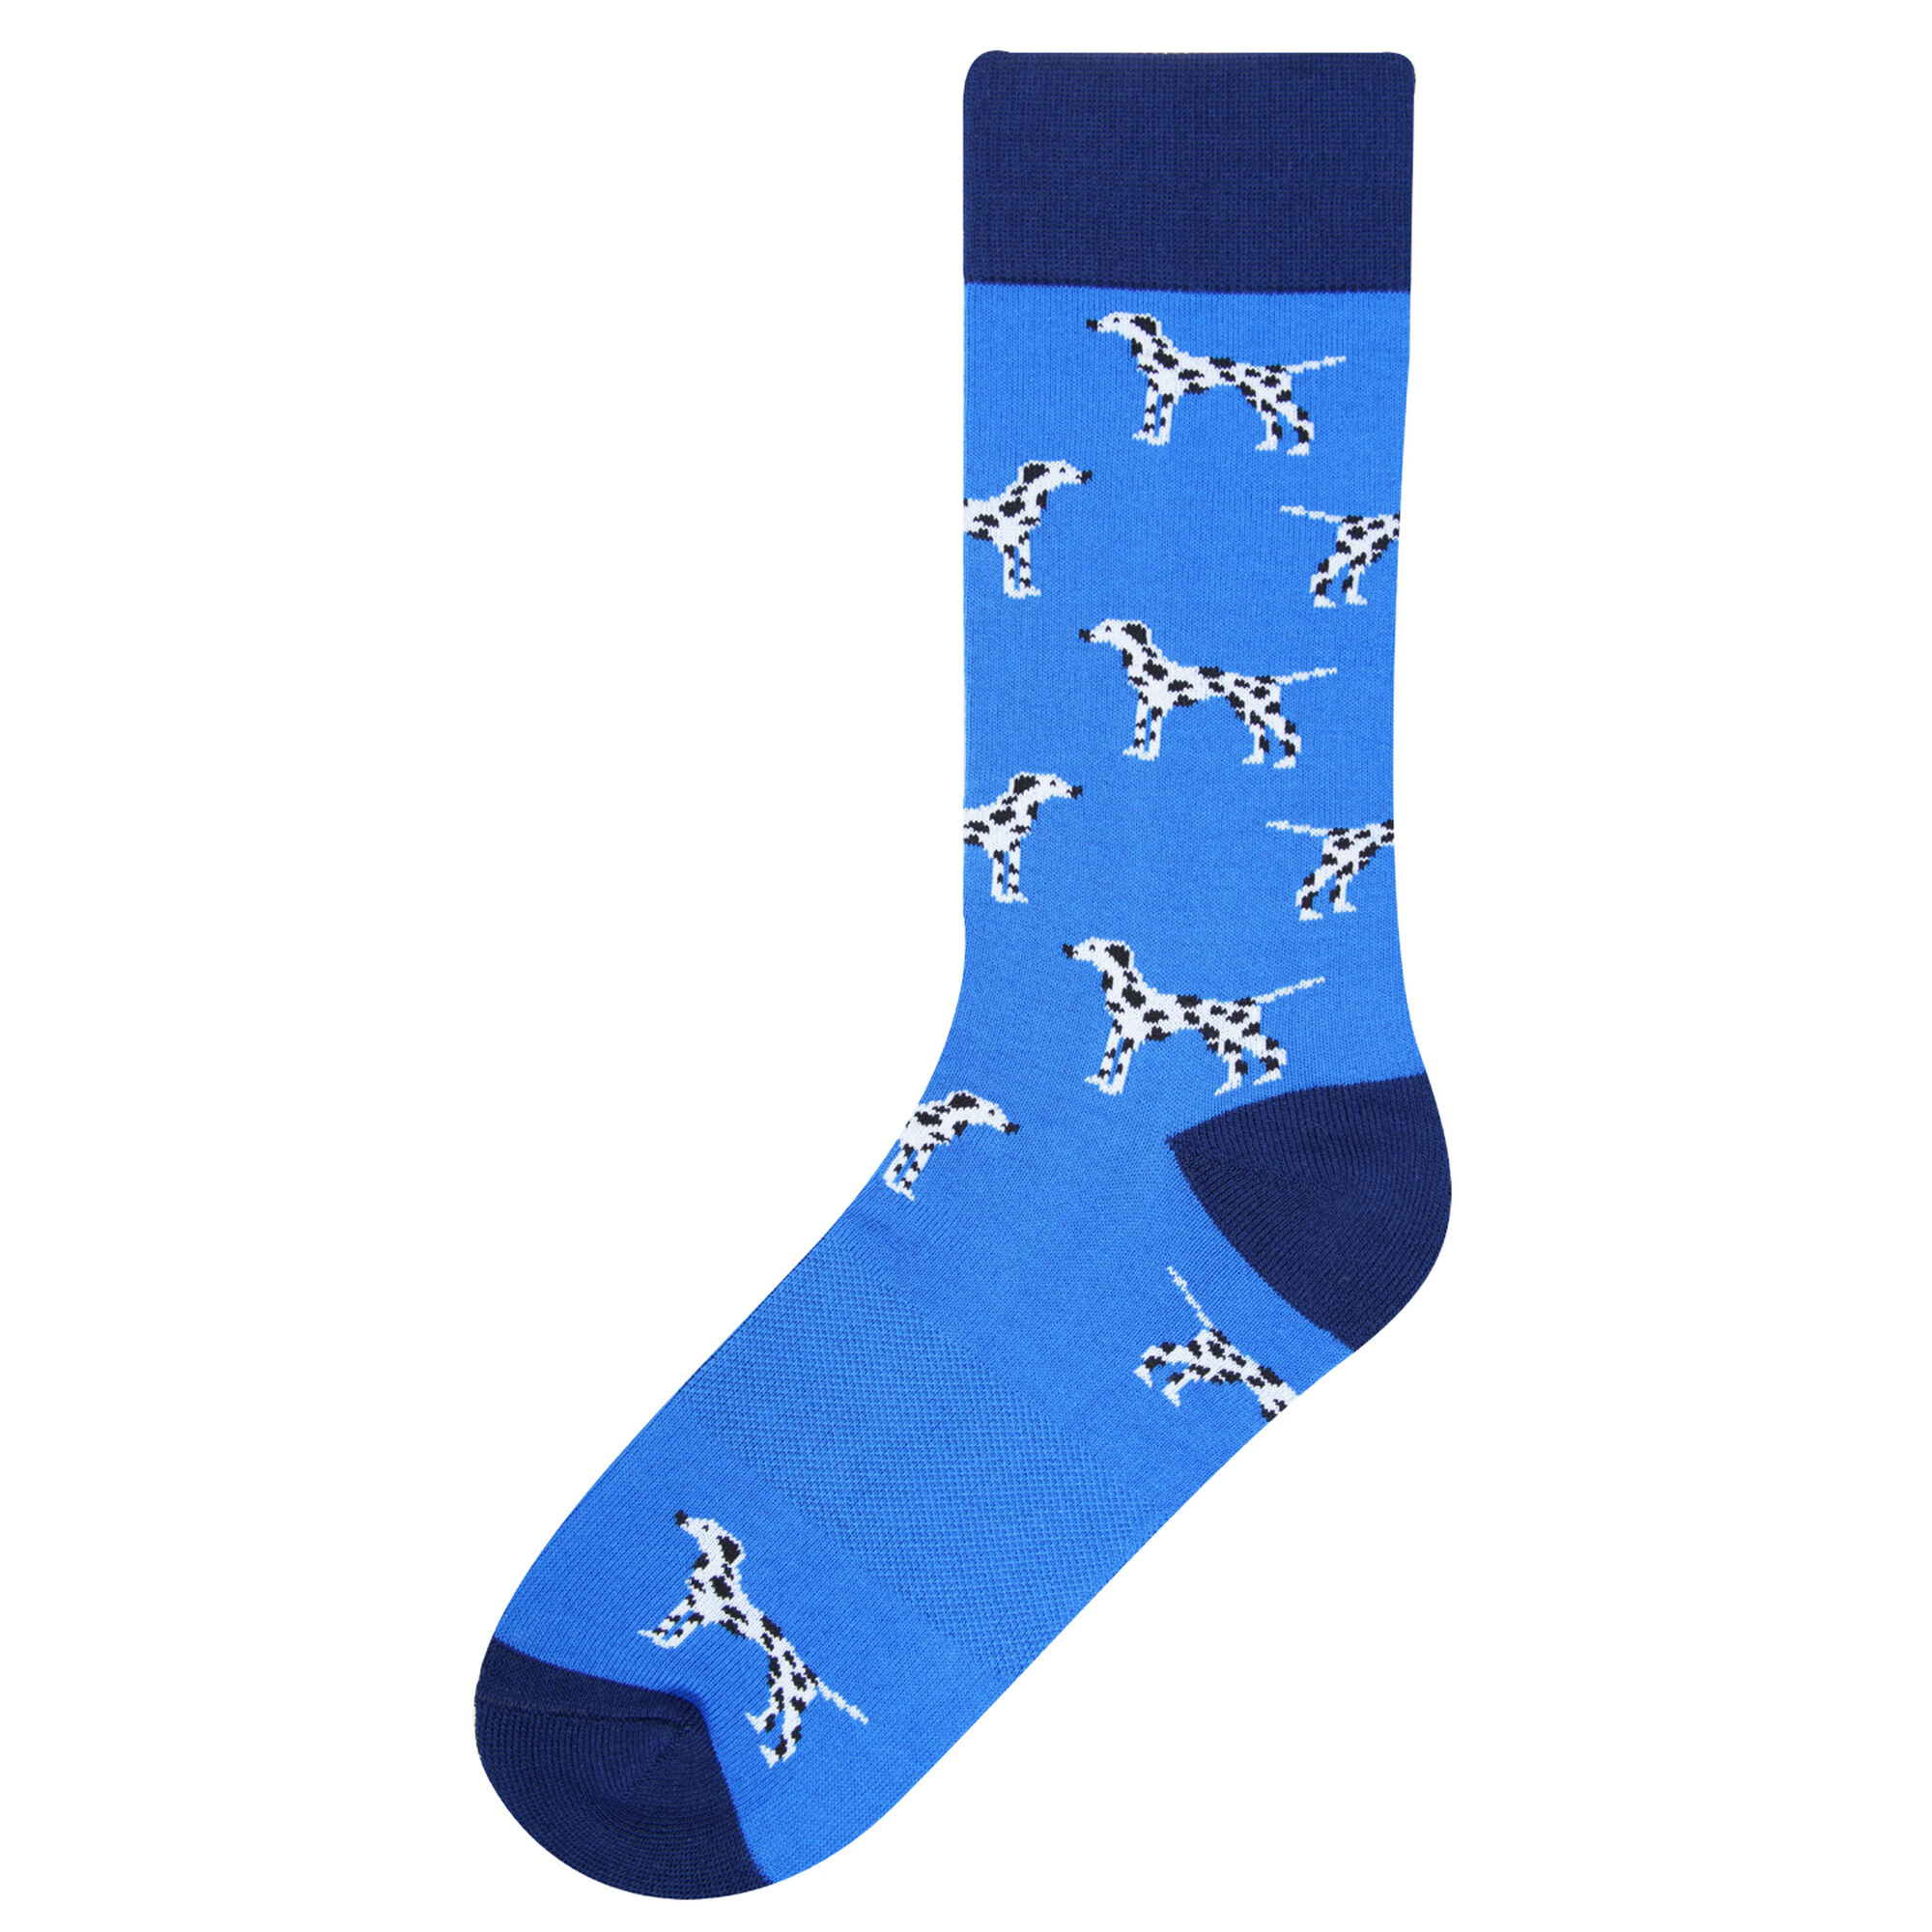 Haggar Dalmation Socks Blue (5R19-2018 Clothing Underwear & Socks) photo